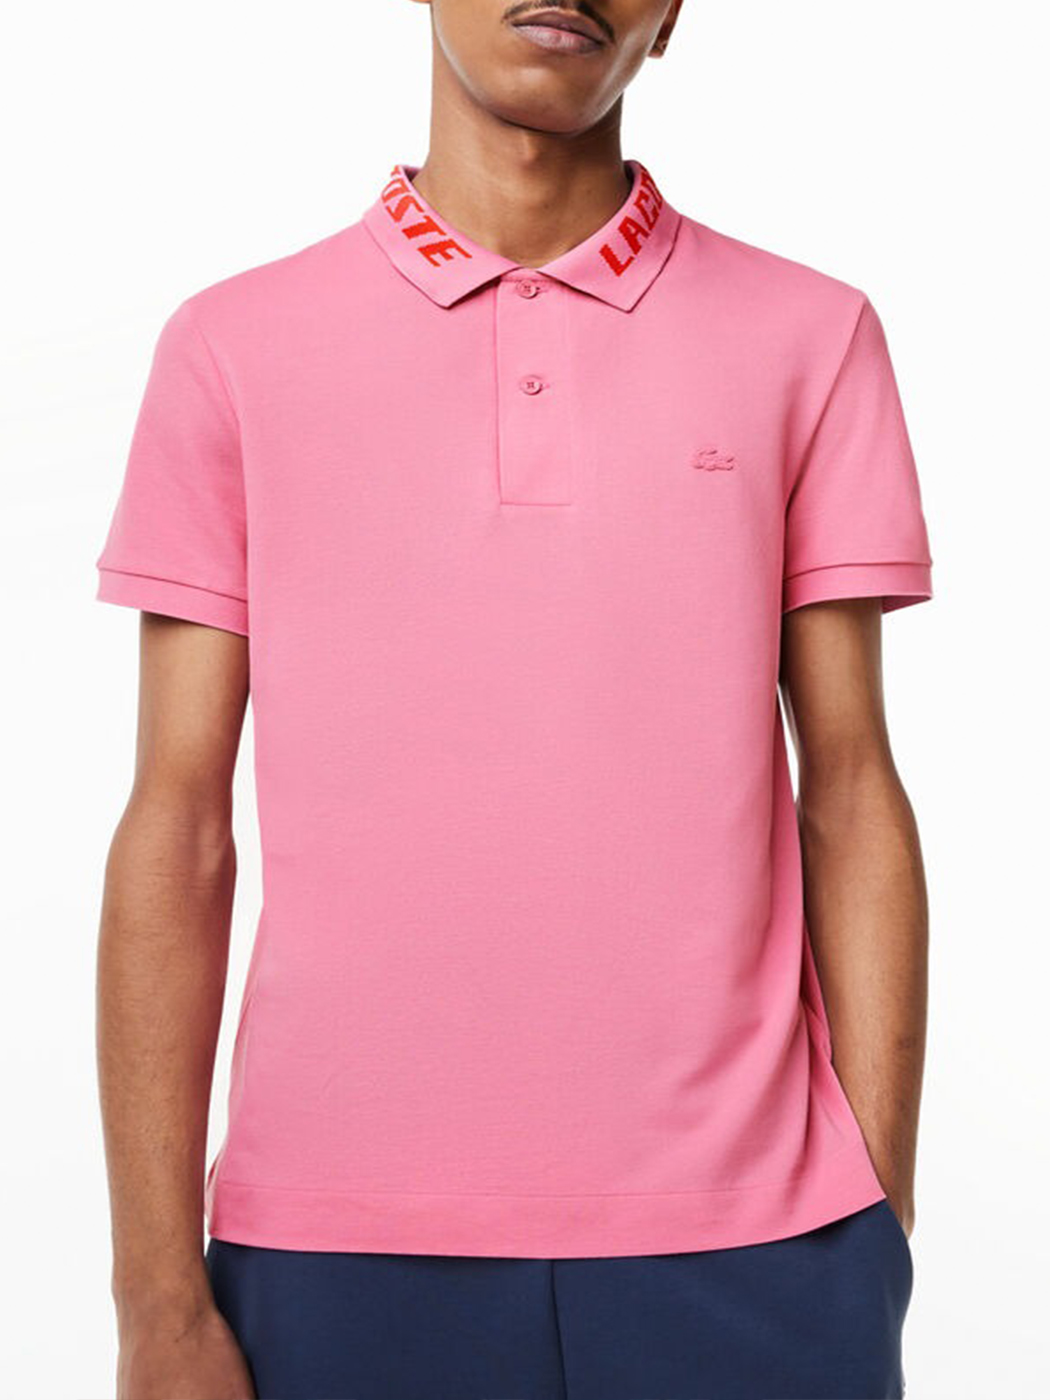 라코스테 SS23 남성 슬림핏 반팔 폴로 로고 스트레치 카라 티셔츠 (핑크)